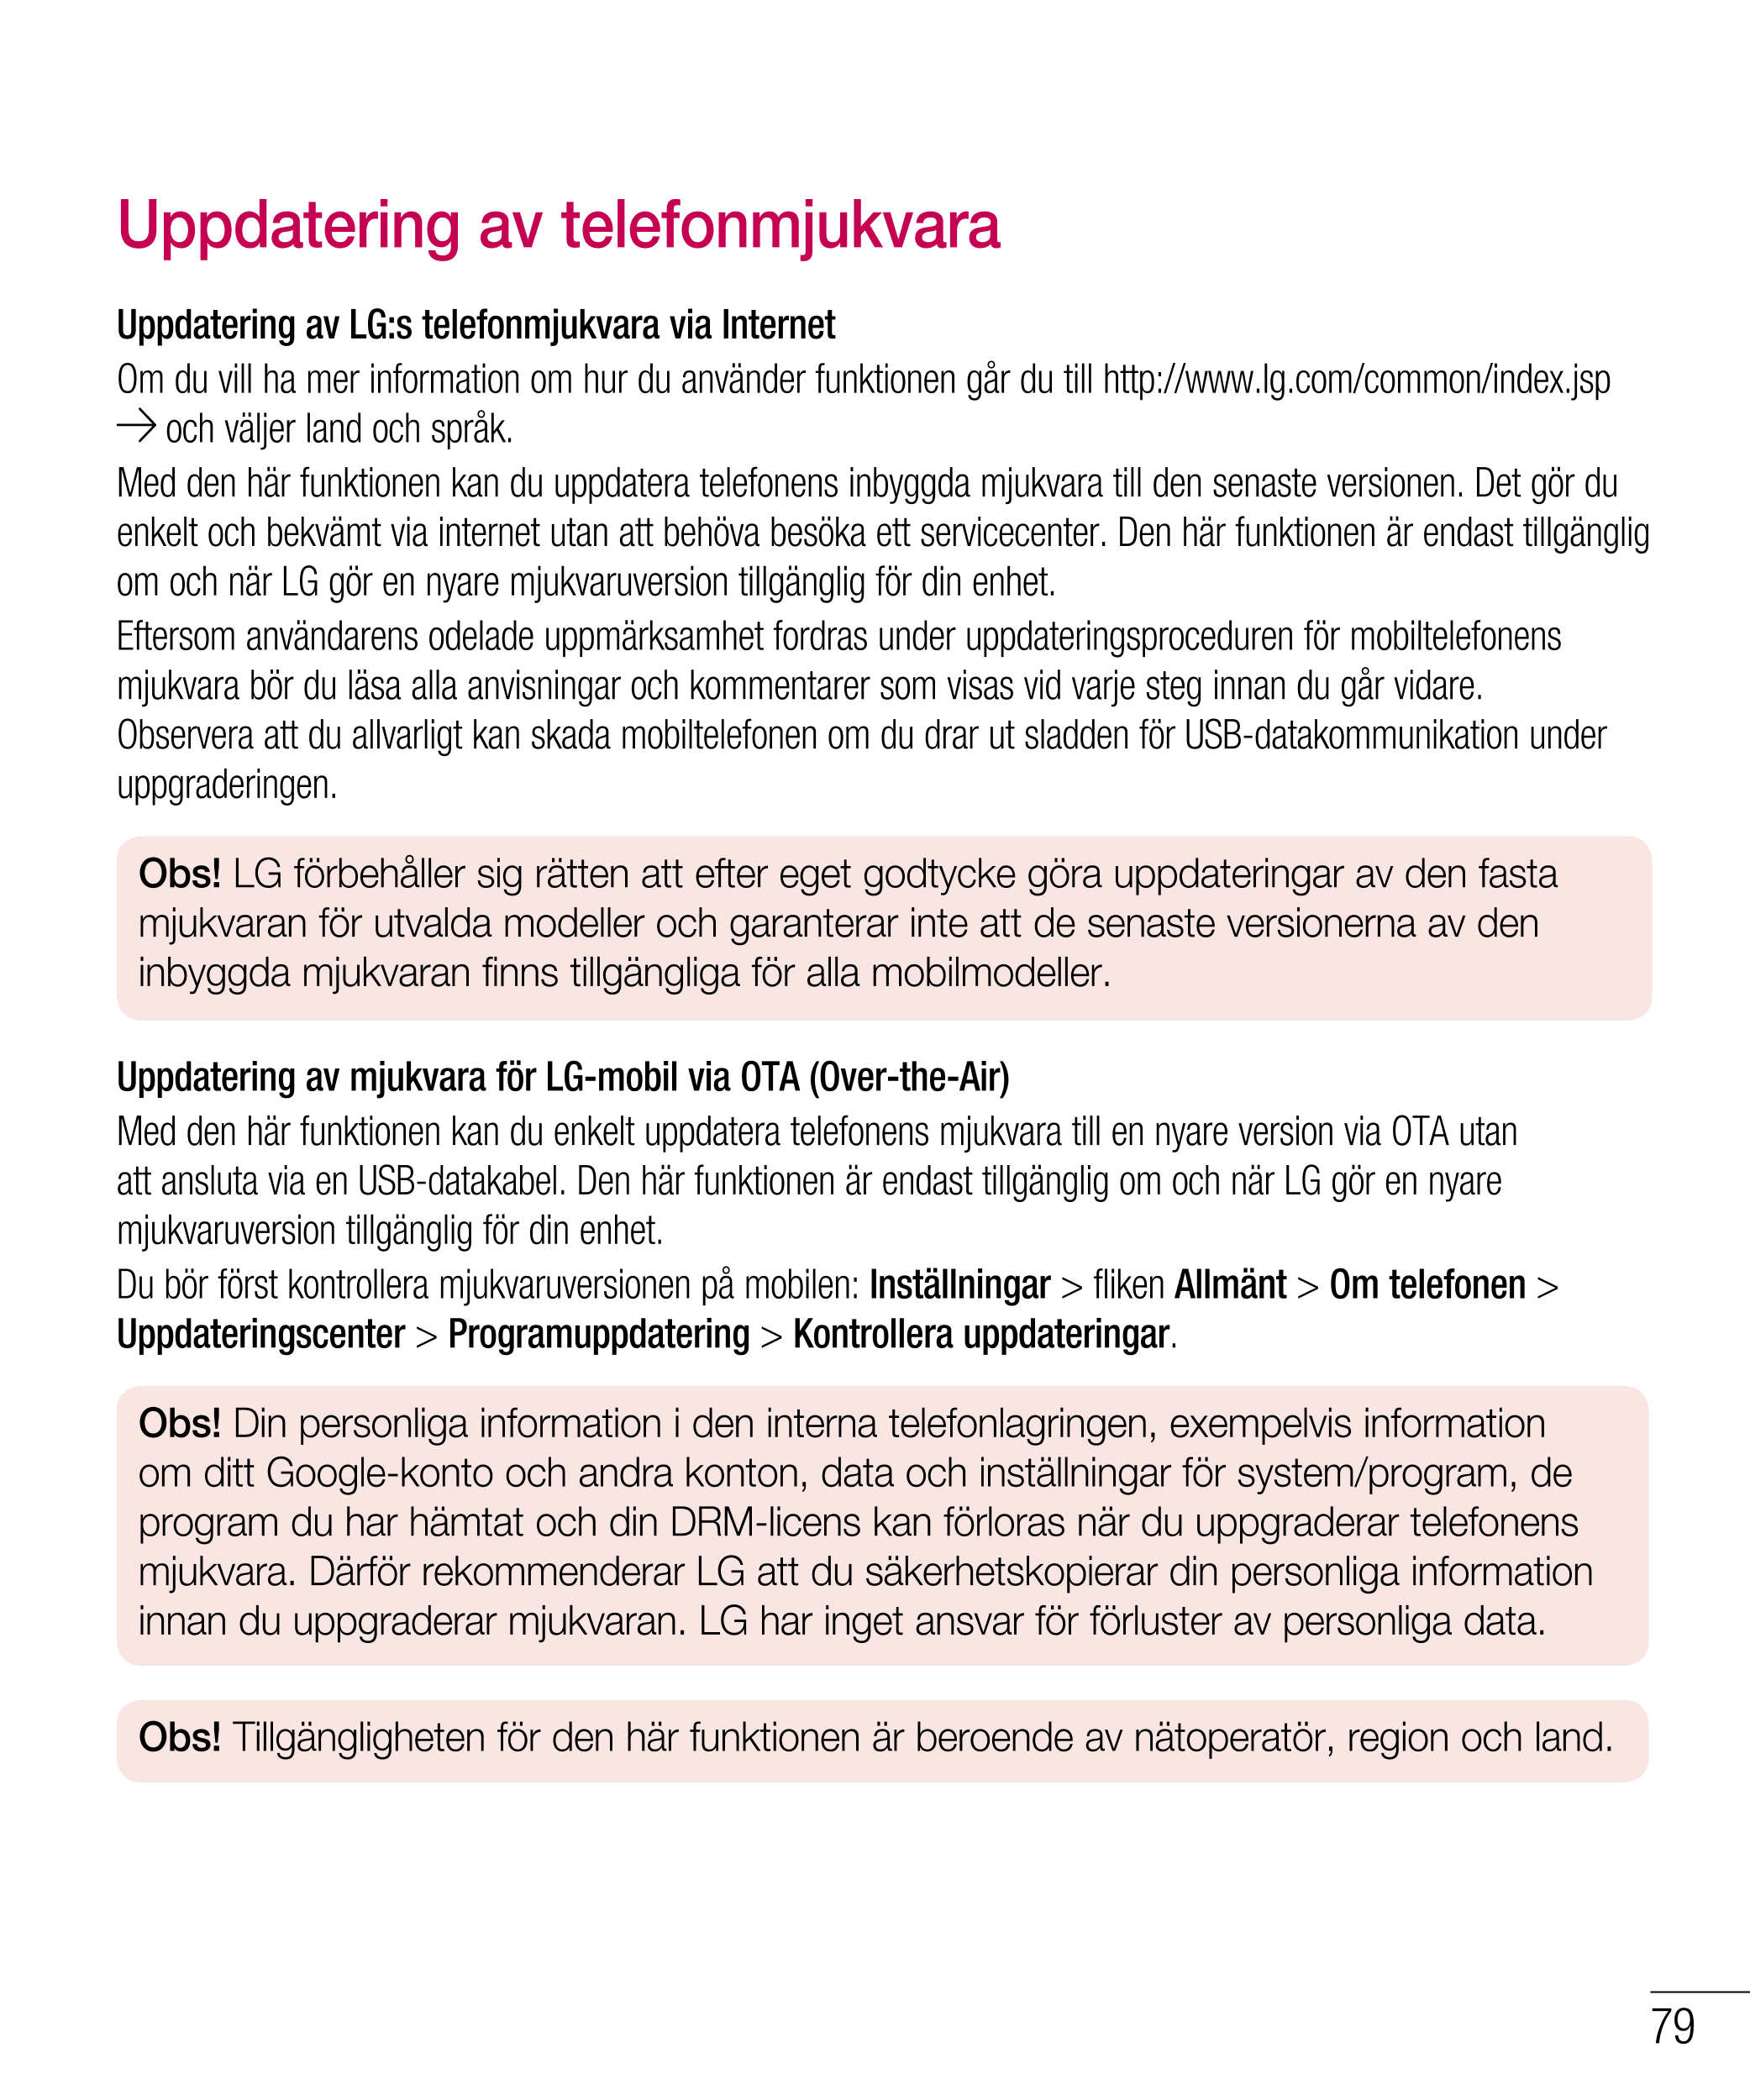 Uppdatering av telefonmjukvara
Uppdatering av LG:s telefonmjukvara via Internet
Om du vill ha mer information om hur du använder